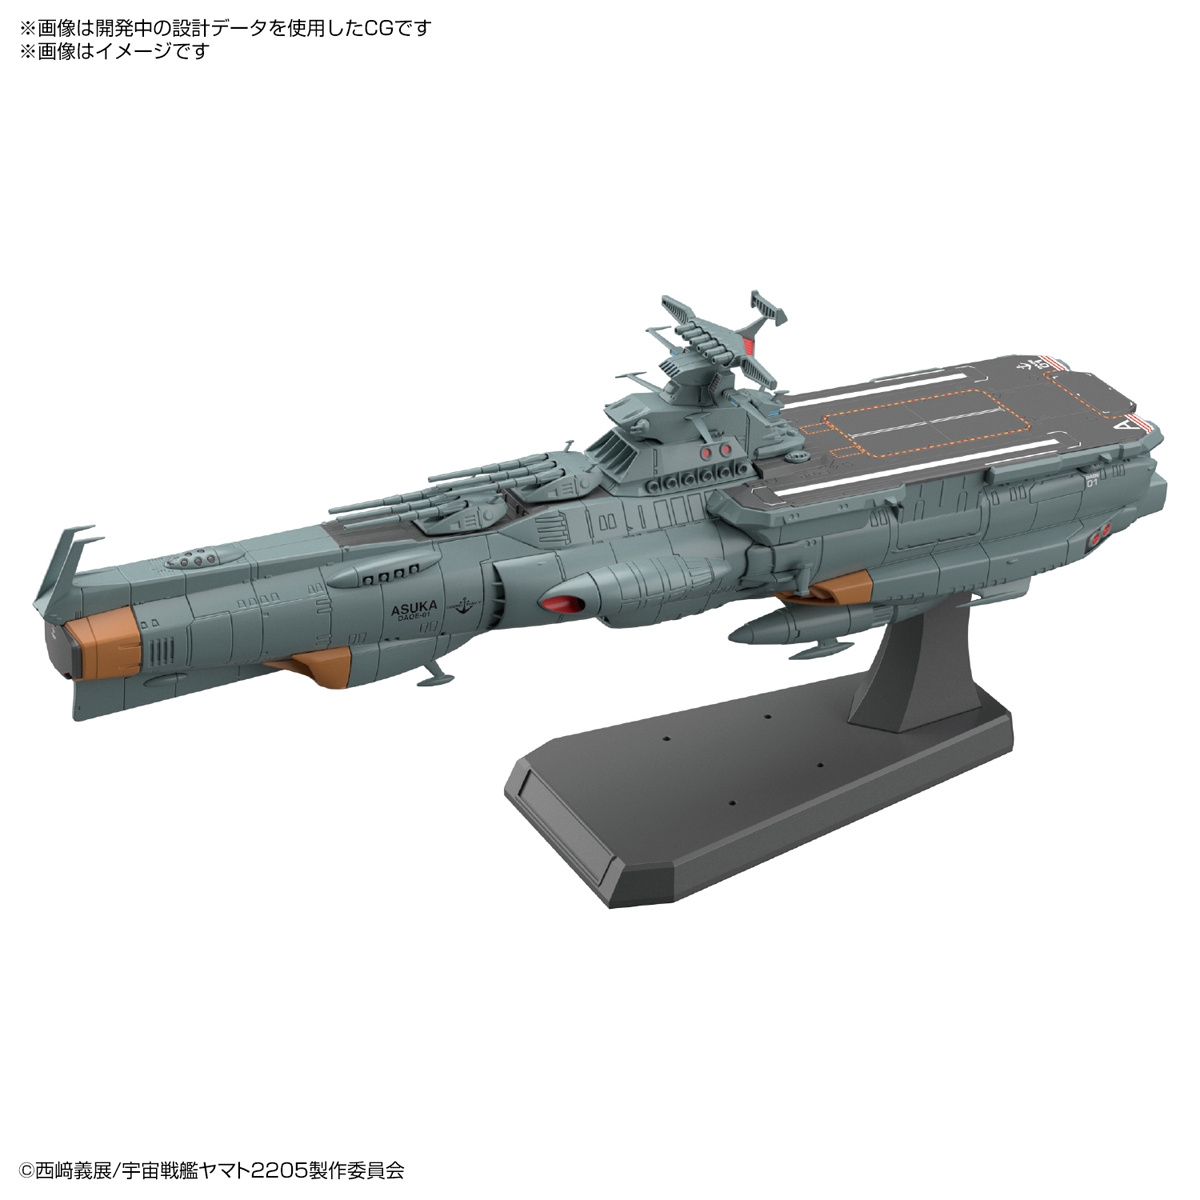 宇宙戦艦ヤマト25 新たなる旅立ち 補給母艦アスカが1 1000シリーズに登場 21年10月発売決定 電撃ホビーウェブ